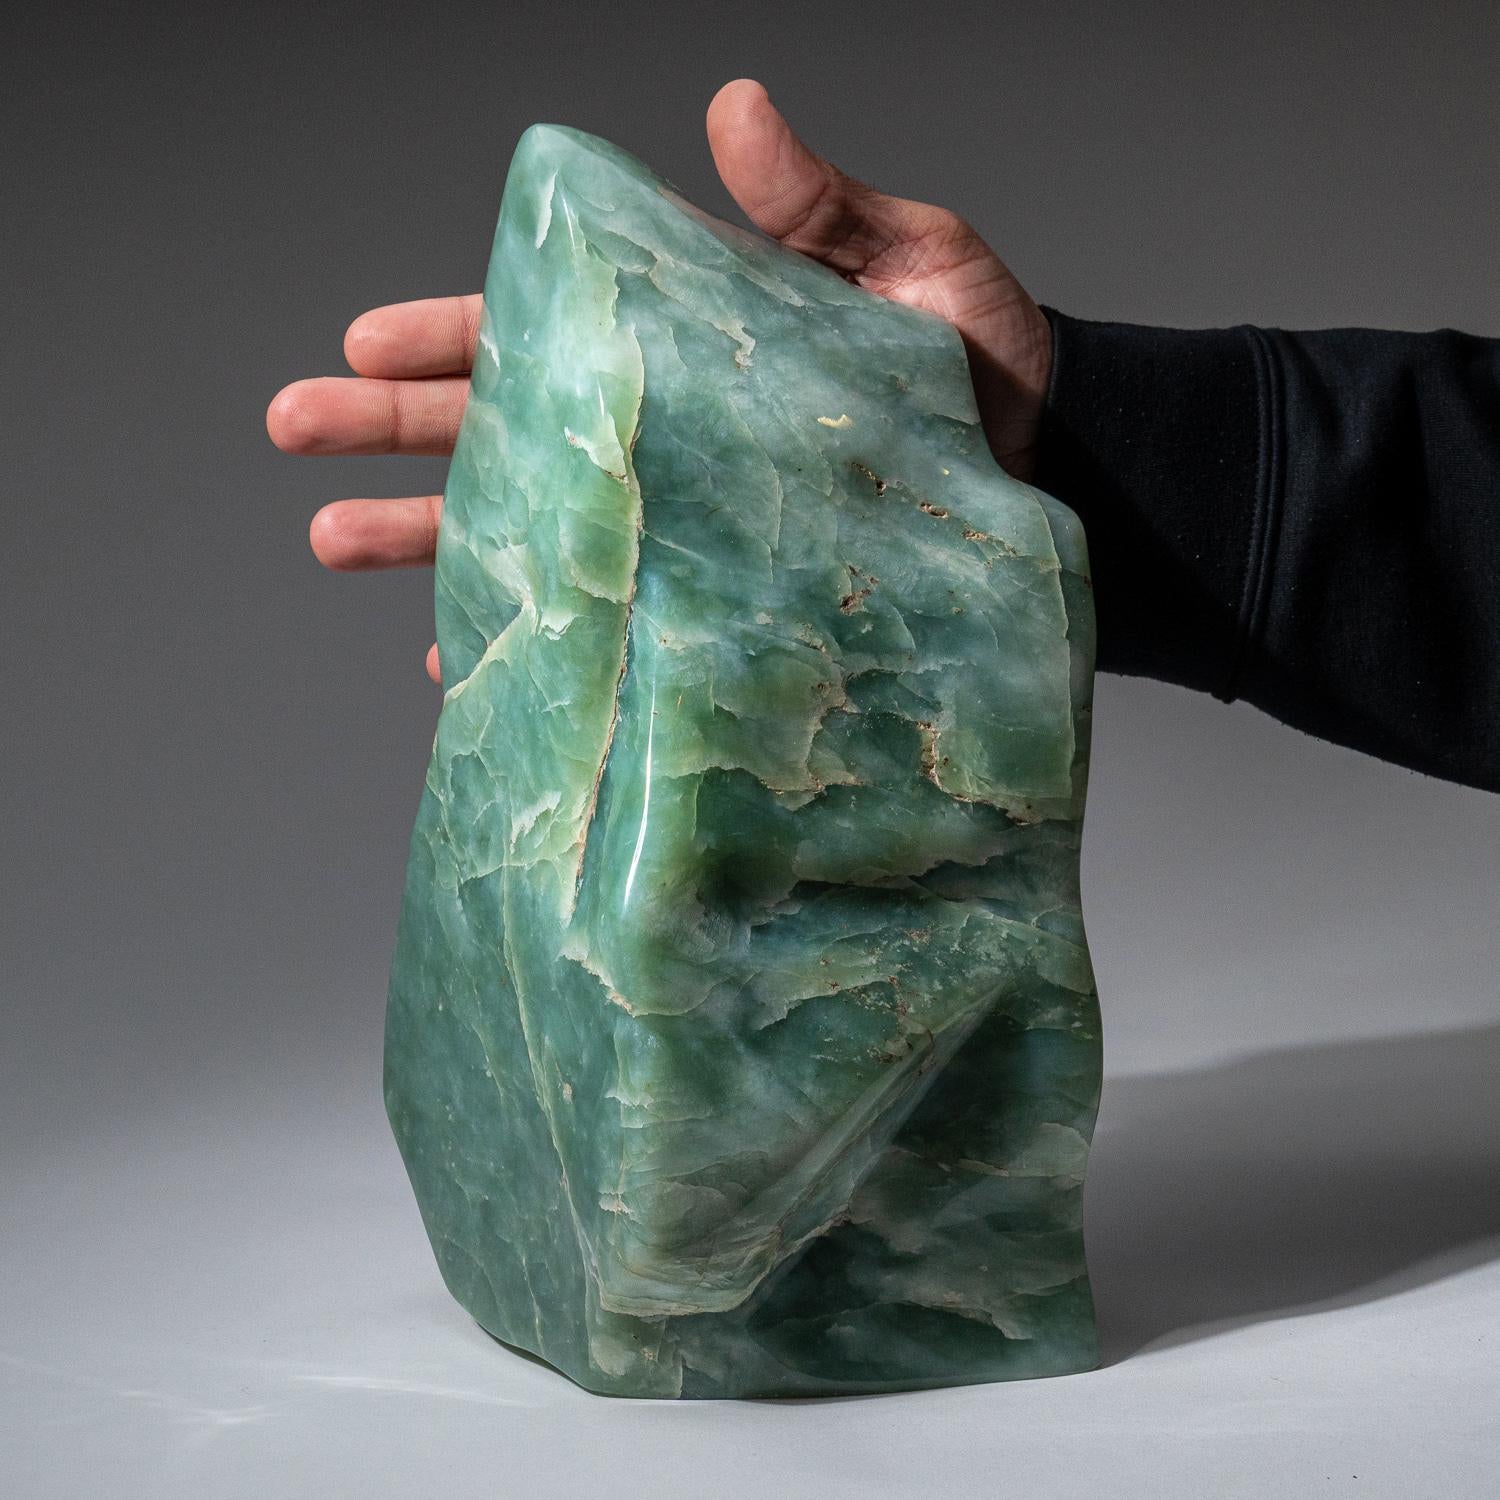 Superbe forme libre sculptée dans un morceau massif de jade de qualité gemme. Cette pièce a une couleur captivante avec un éclat brillant et de belles transparences. Il a été poli à la main pour obtenir une finition miroir. 

Connue comme la